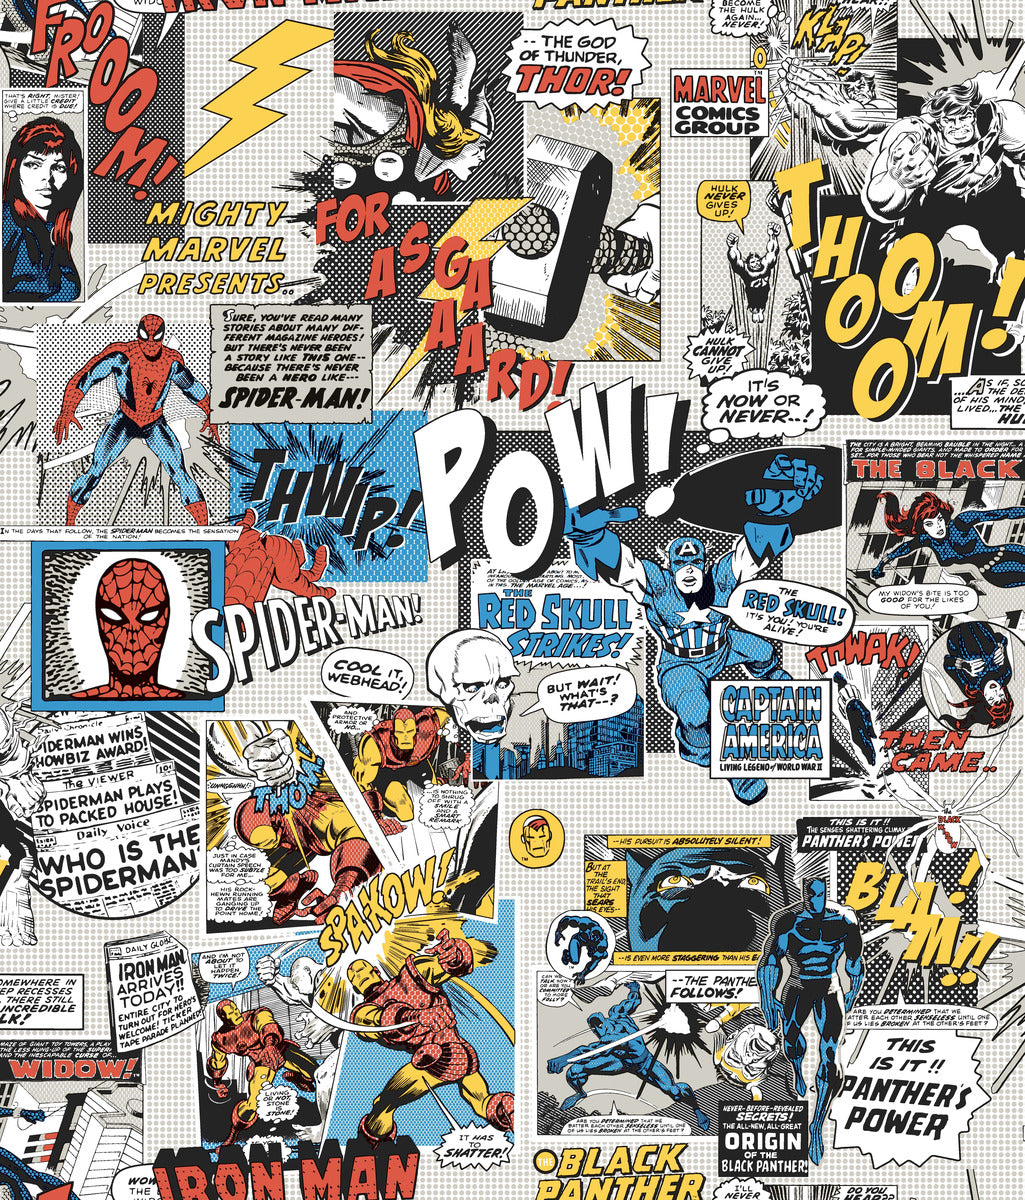 marvel comics logo wallpaper